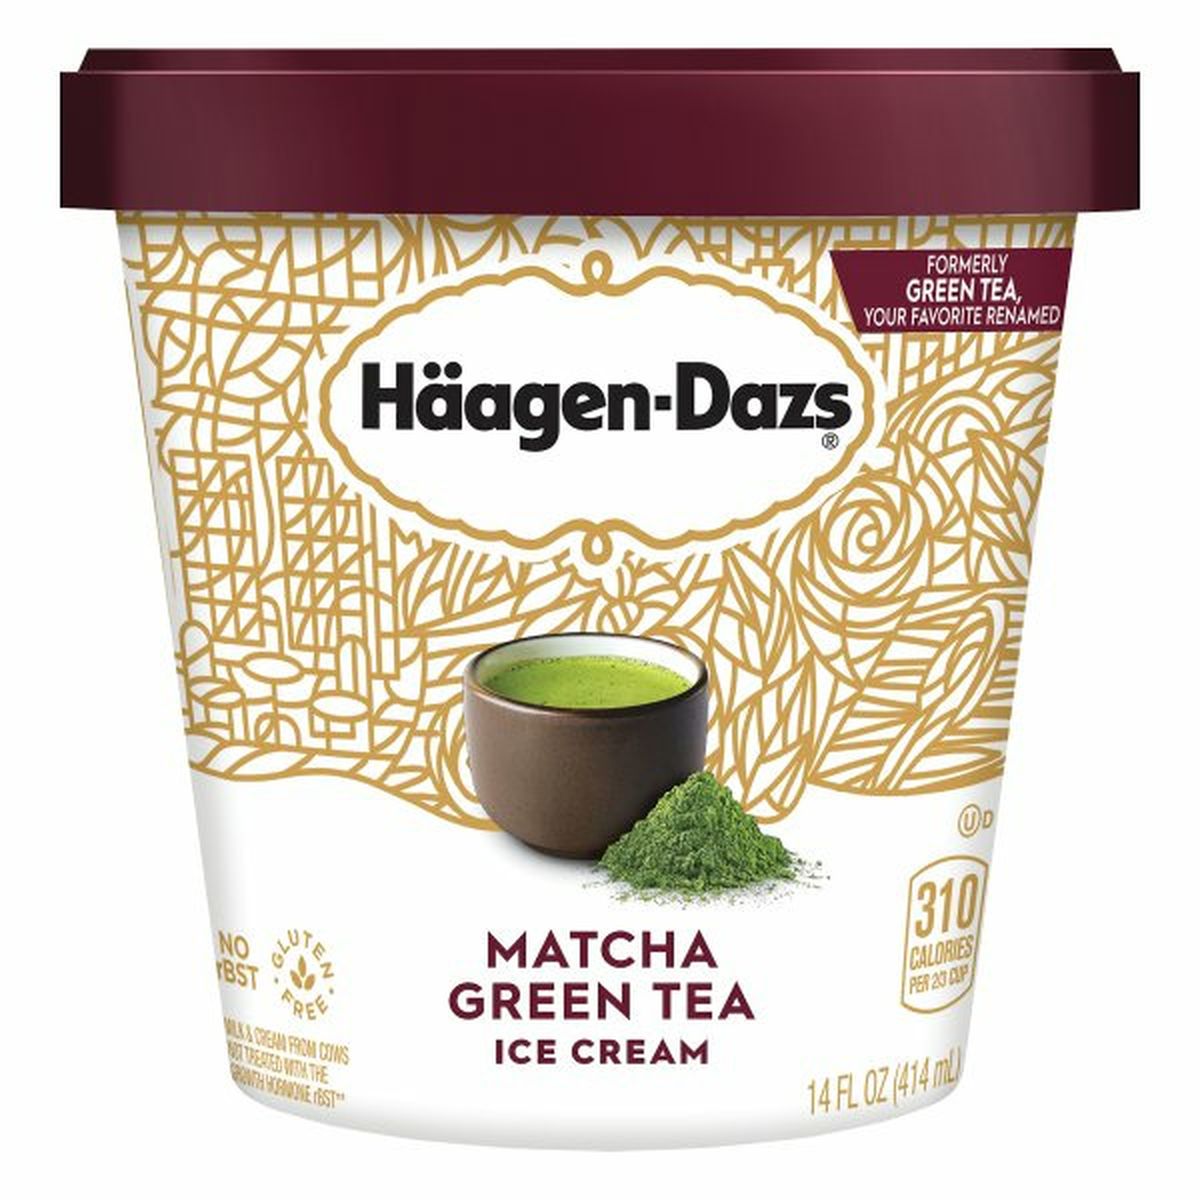 Calories in Haagen-Dazs Ice Cream, Matcha Green Tea